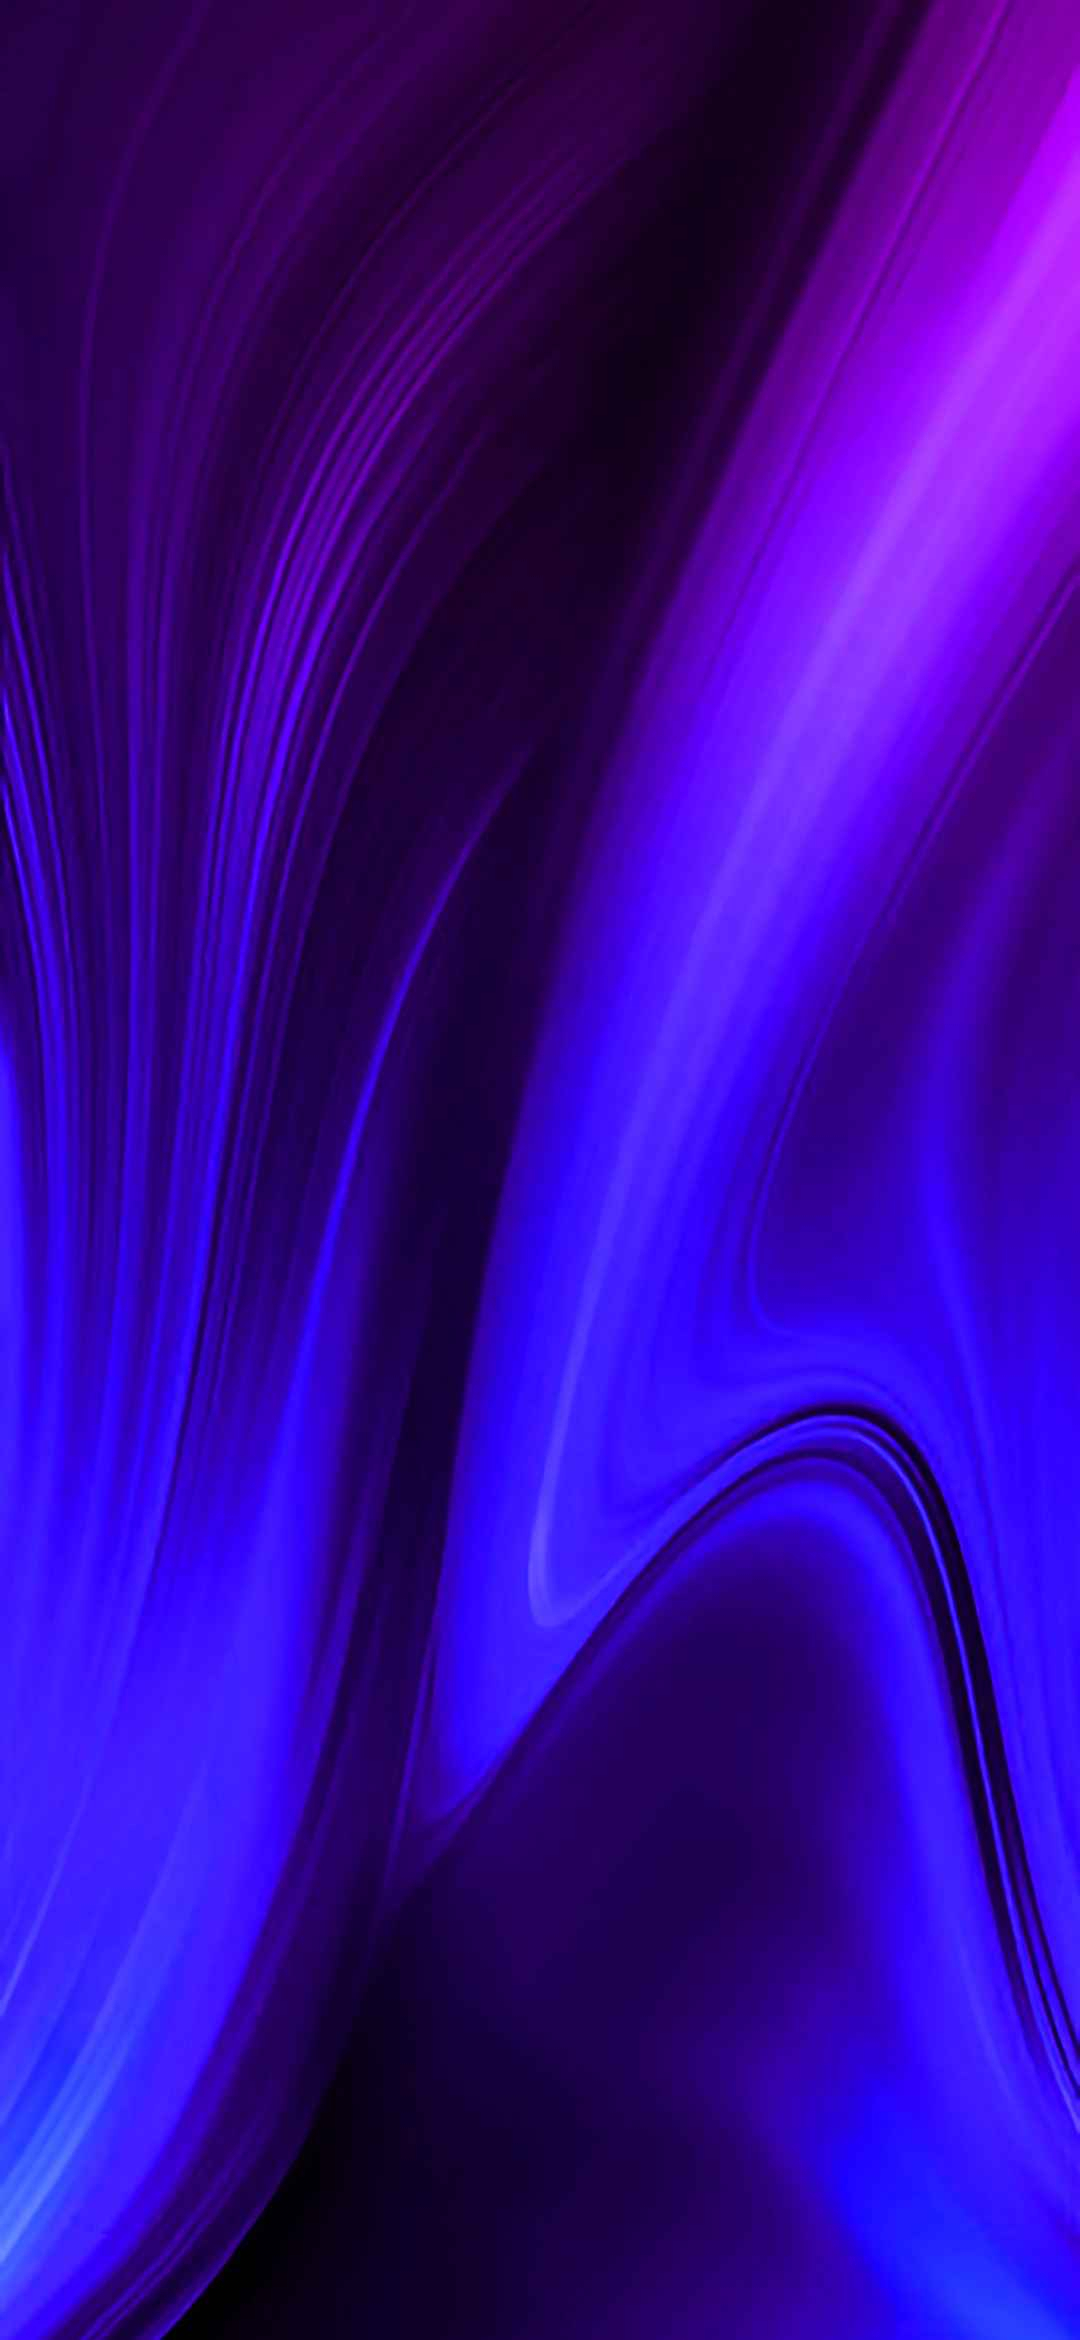 samsung galaxy grand prime plus fond d'écran,bleu,violet,violet,bleu électrique,lumière